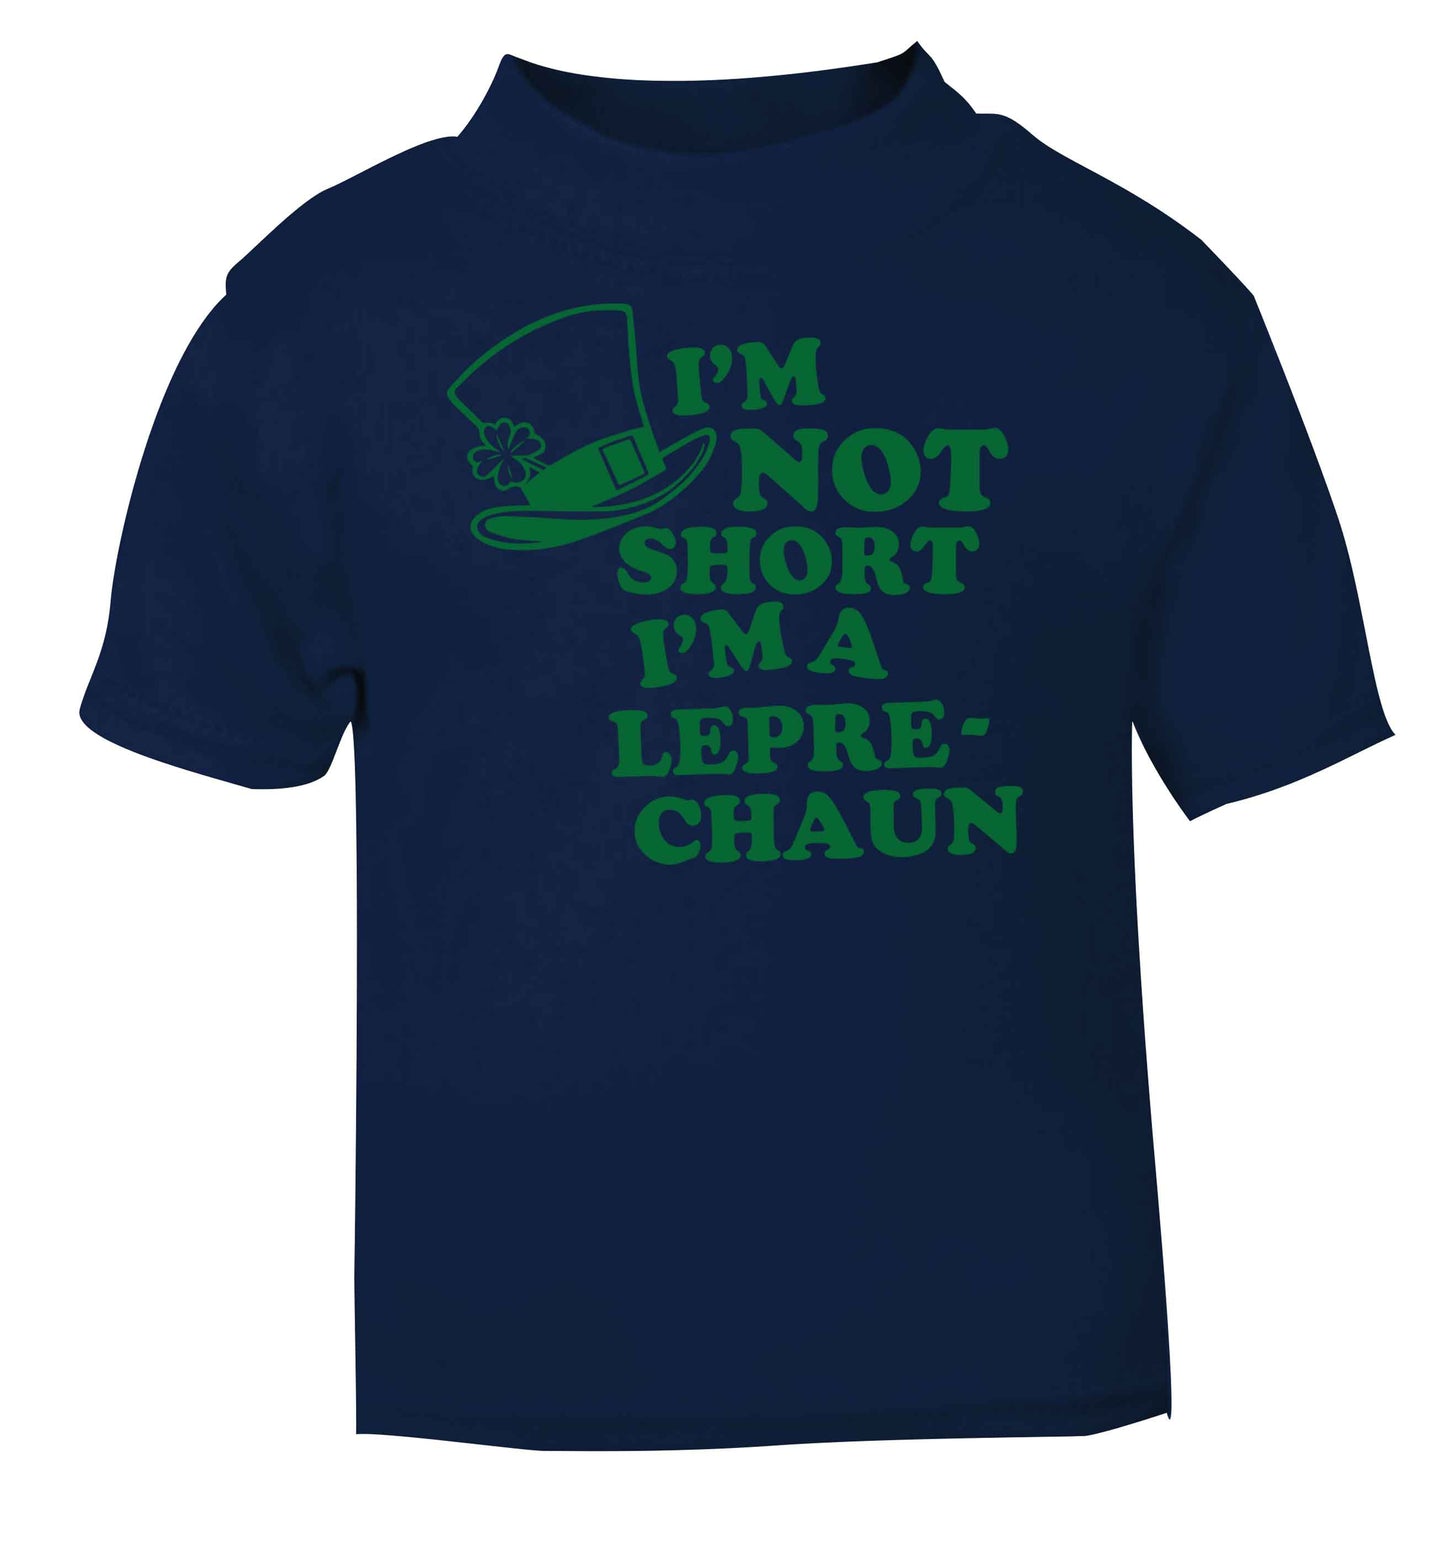 I'm not short I'm a leprechaun navy baby toddler Tshirt 2 Years